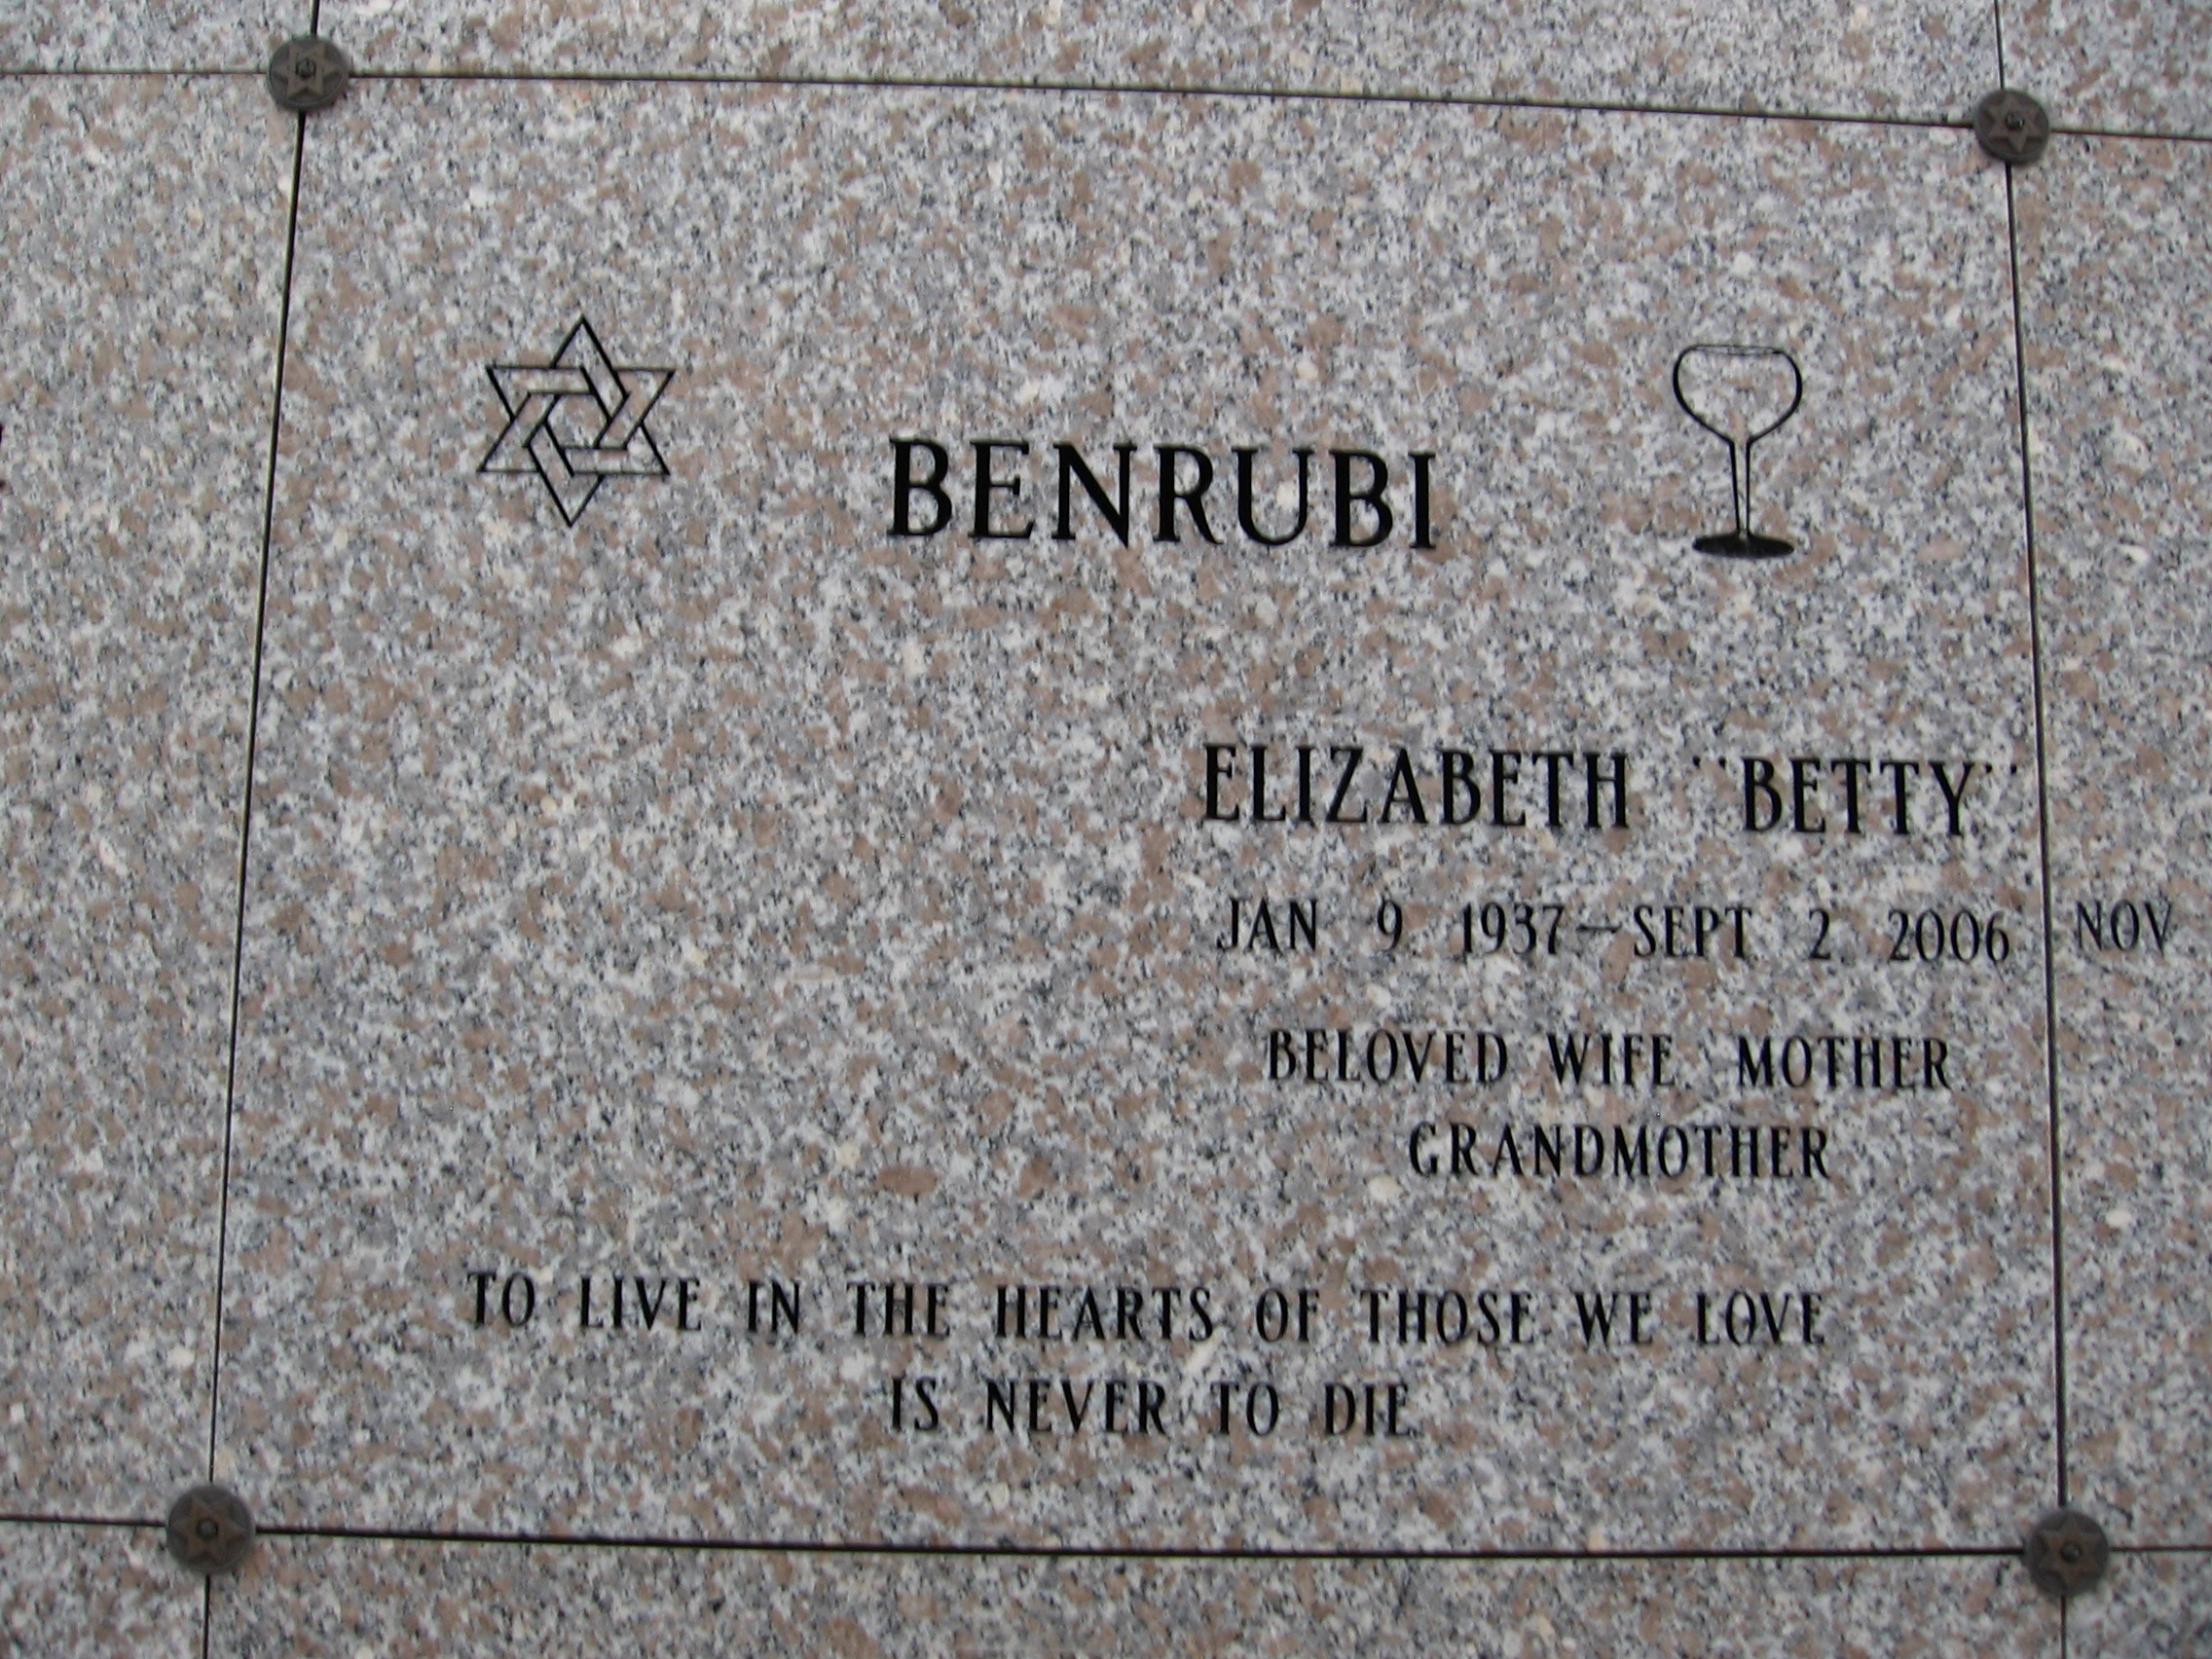 Elizabeth "Betty" Benrubi